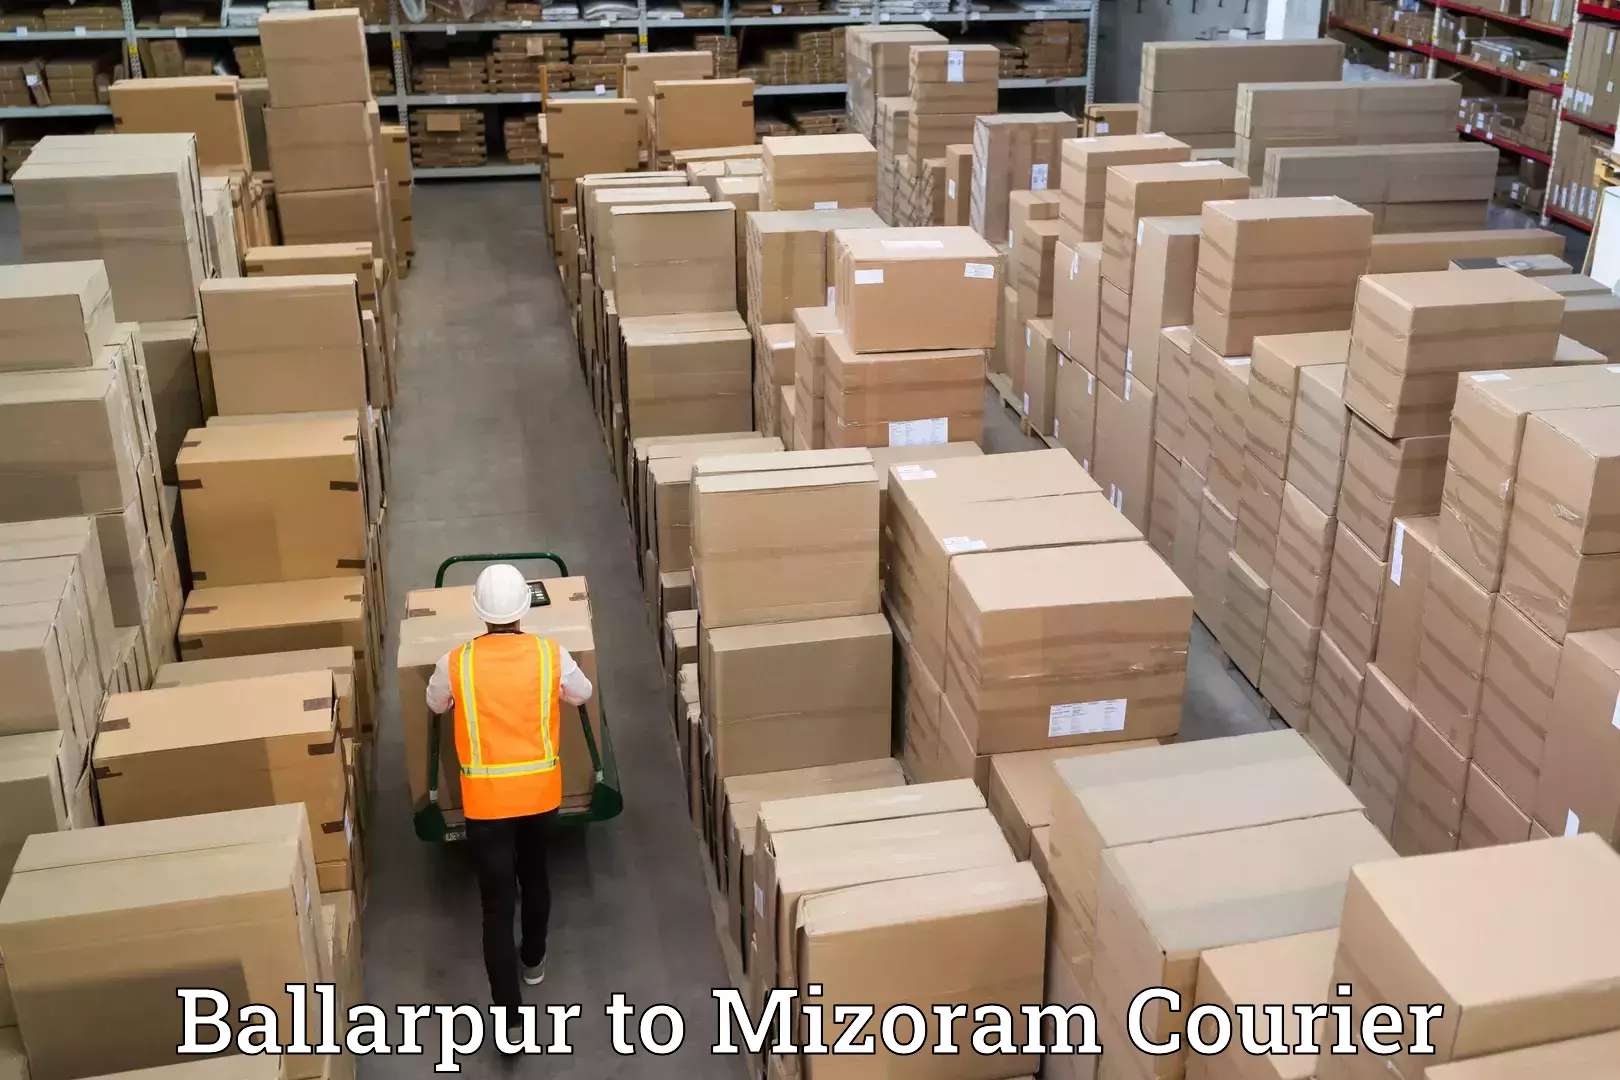 Seamless moving process Ballarpur to Mizoram